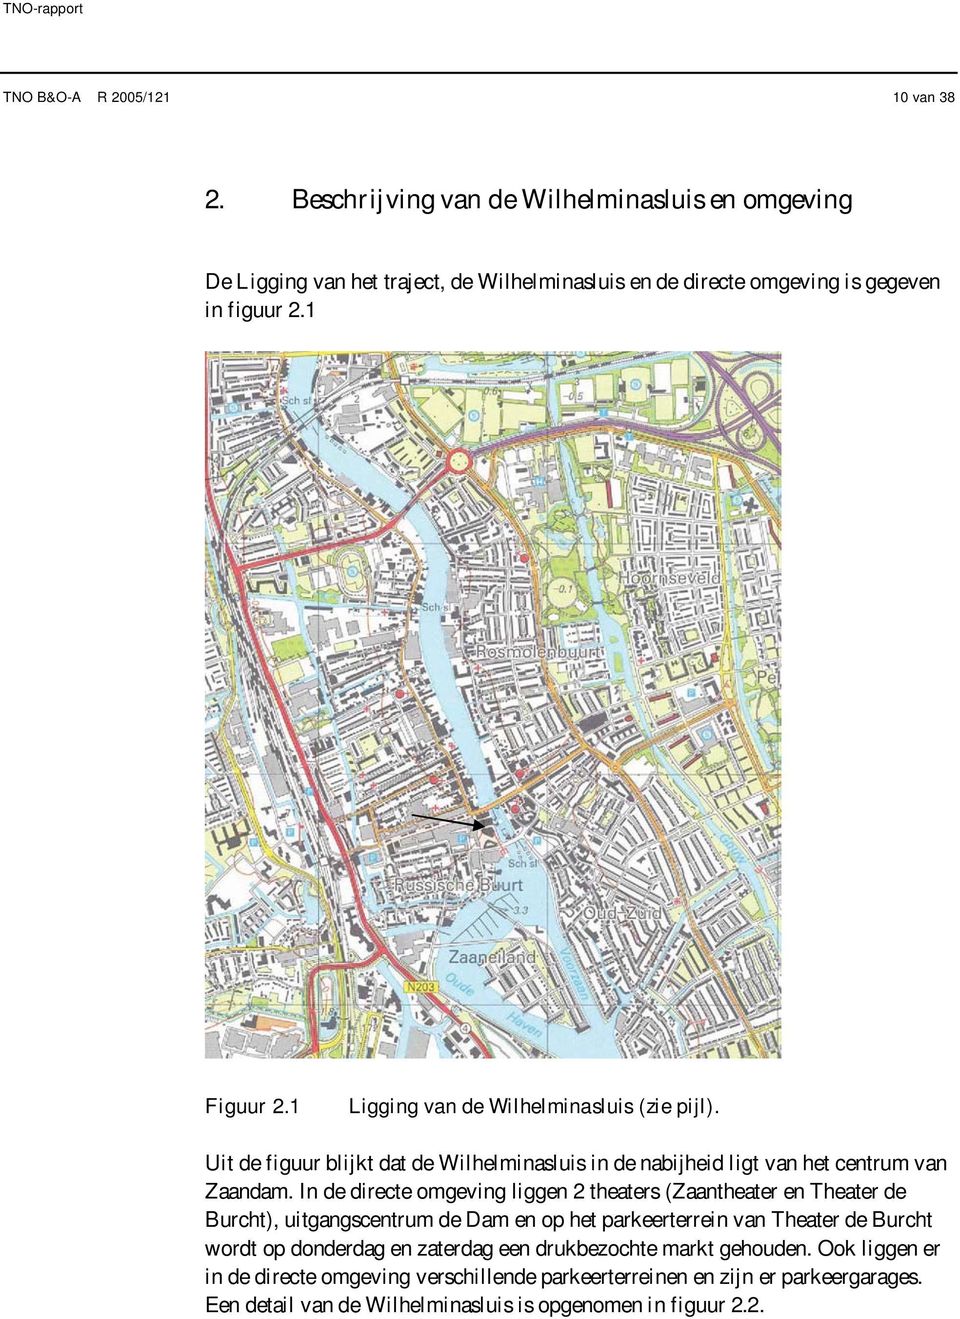 1 Ligging van de Wilhelminasluis (zie pijl). Uit de figuur blijkt dat de Wilhelminasluis in de nabijheid ligt van het centrum van Zaandam.